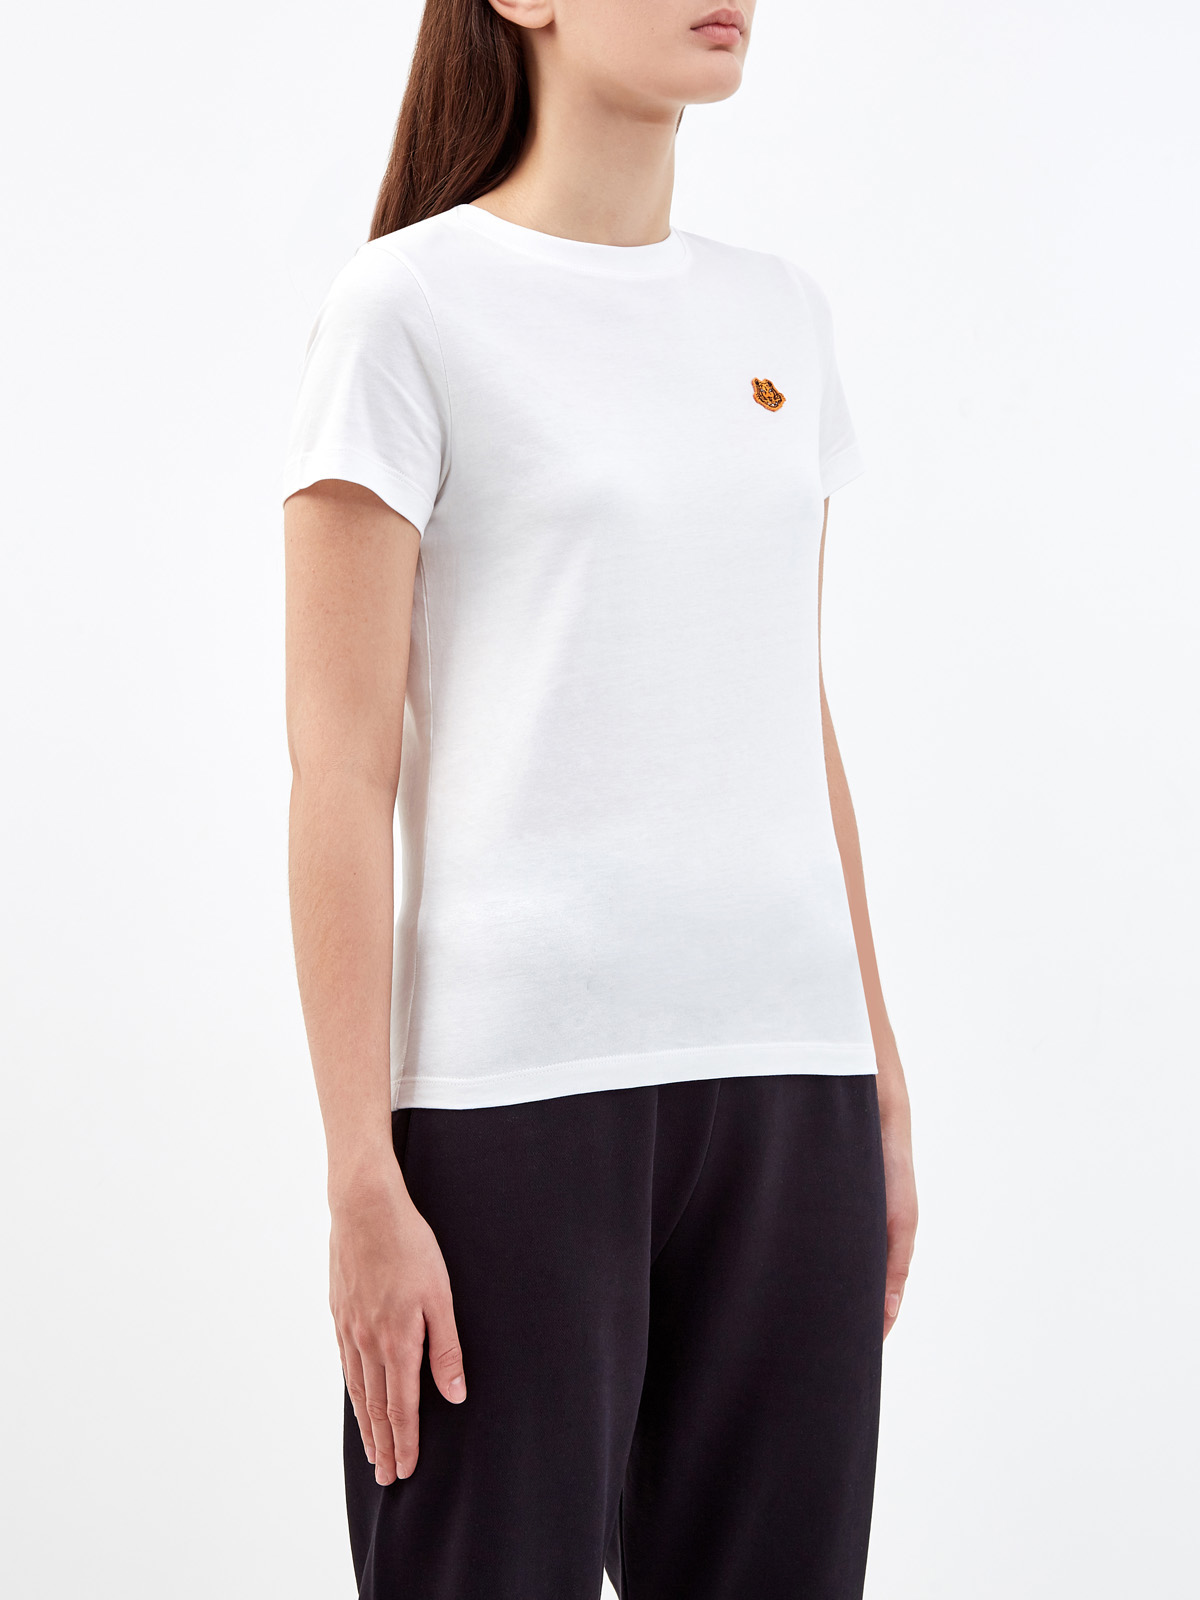 Хлопковая футболка из гладкого джерси с вышитой эмблемой бренда KENZO, цвет белый, размер M;L;XL;XS - фото 3